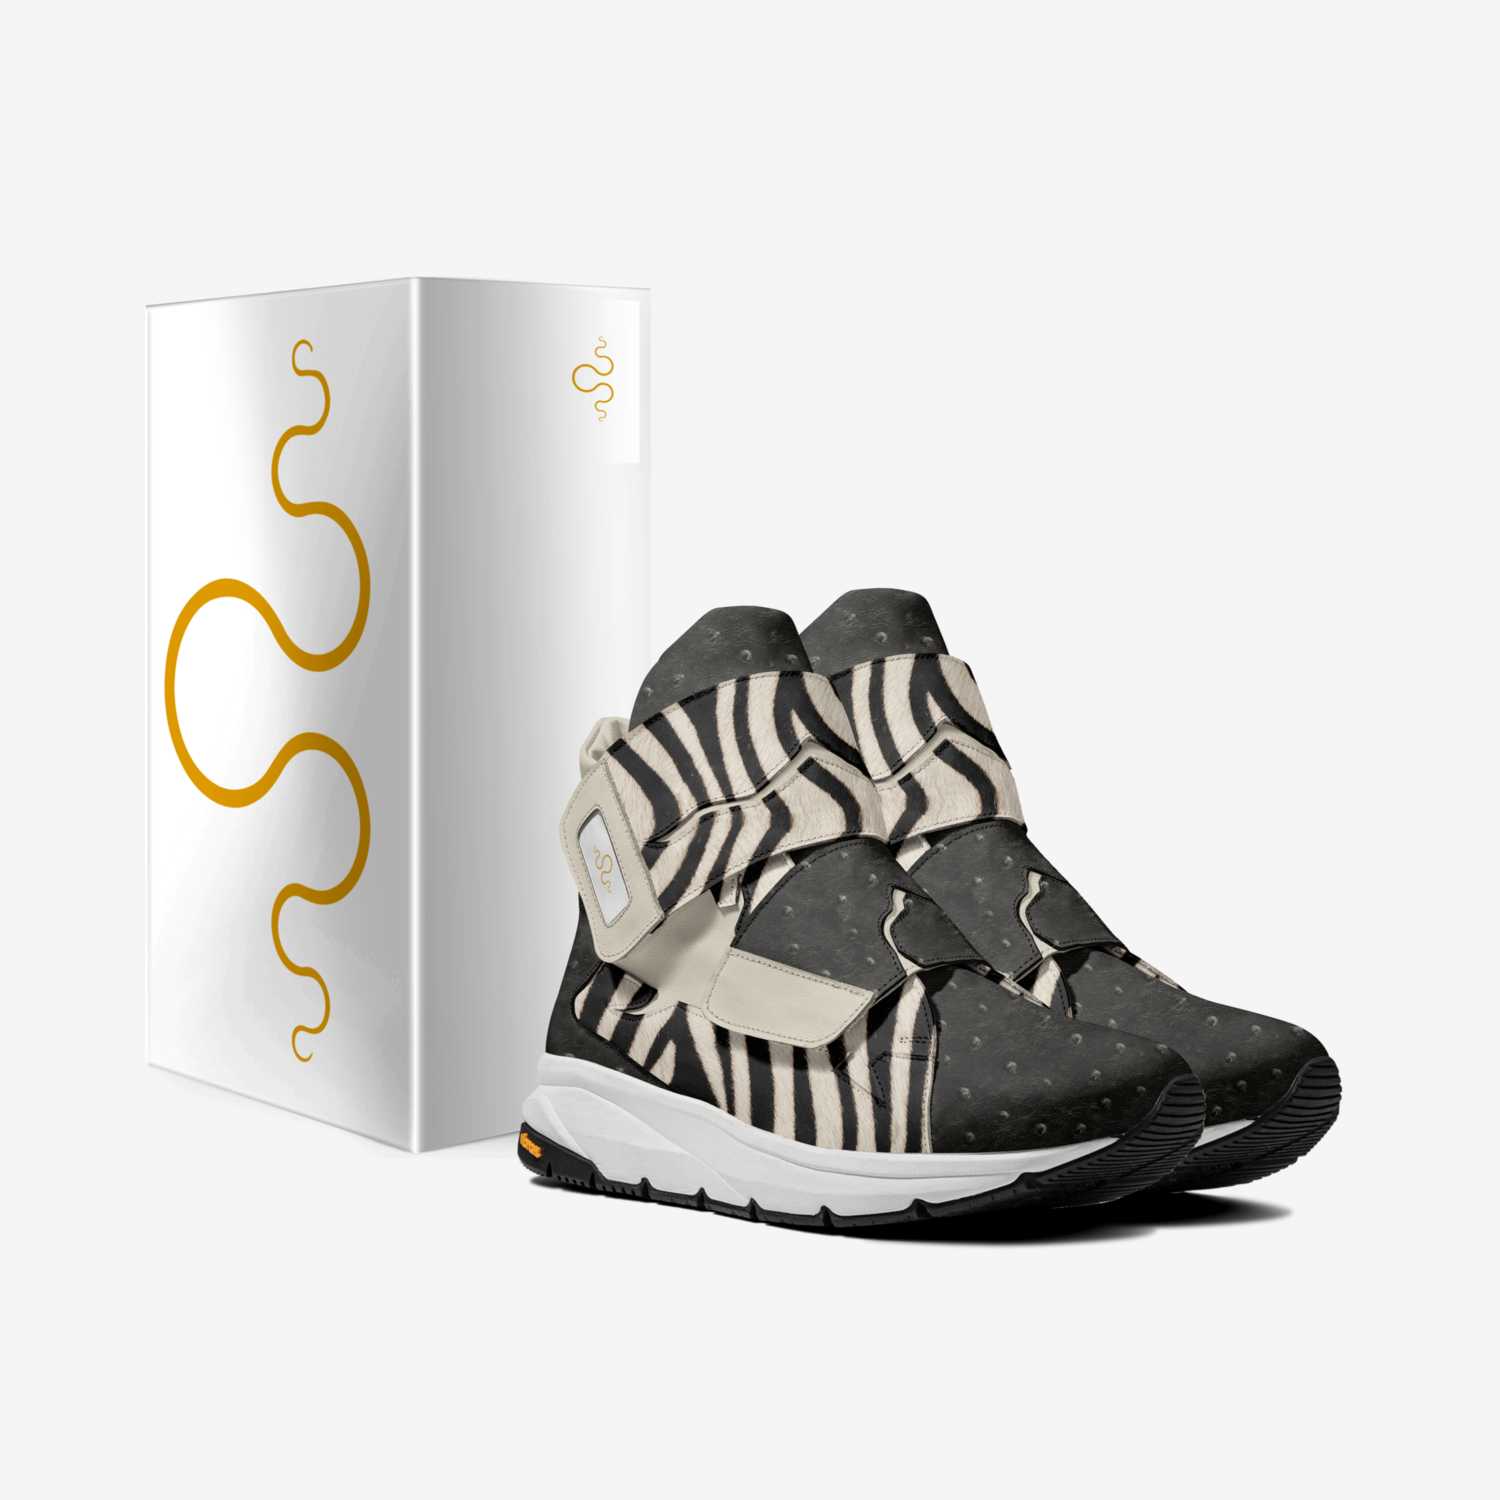 Kraken 4 custom made in Italy shoes by Carlos Segarra | Box view